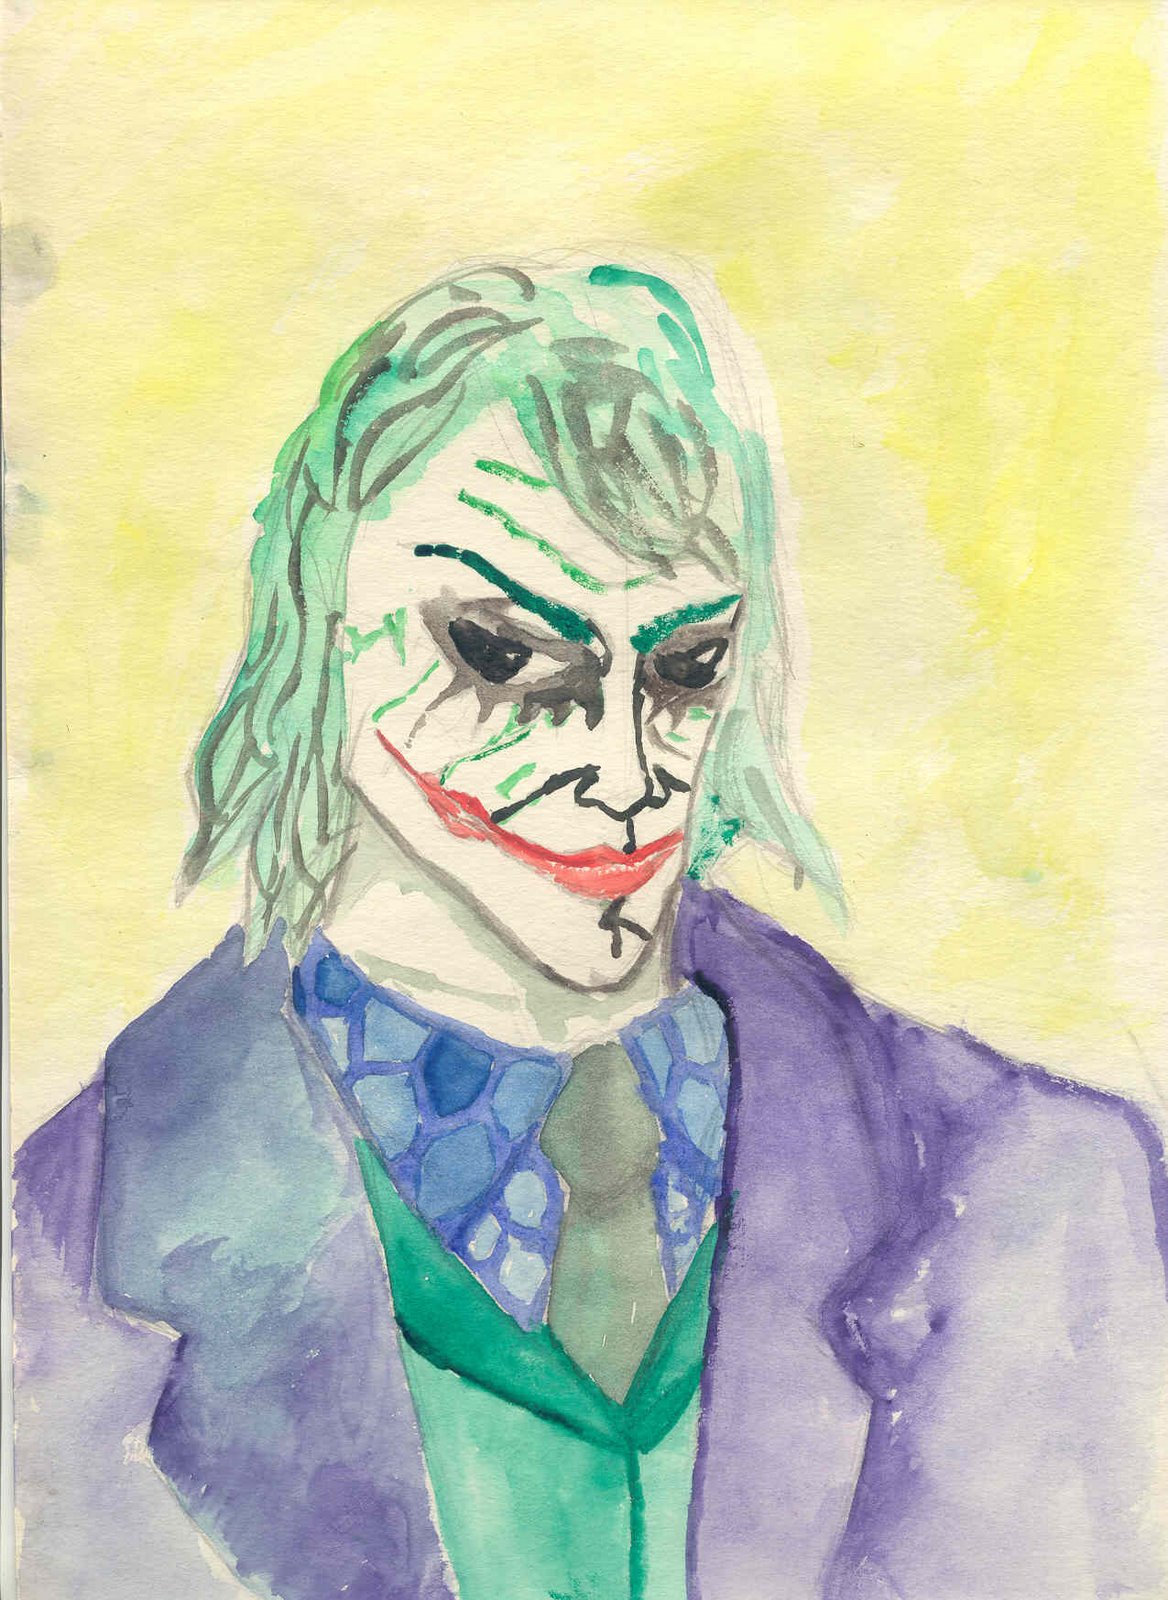 [Heath+Ledger+Joker.jpg]